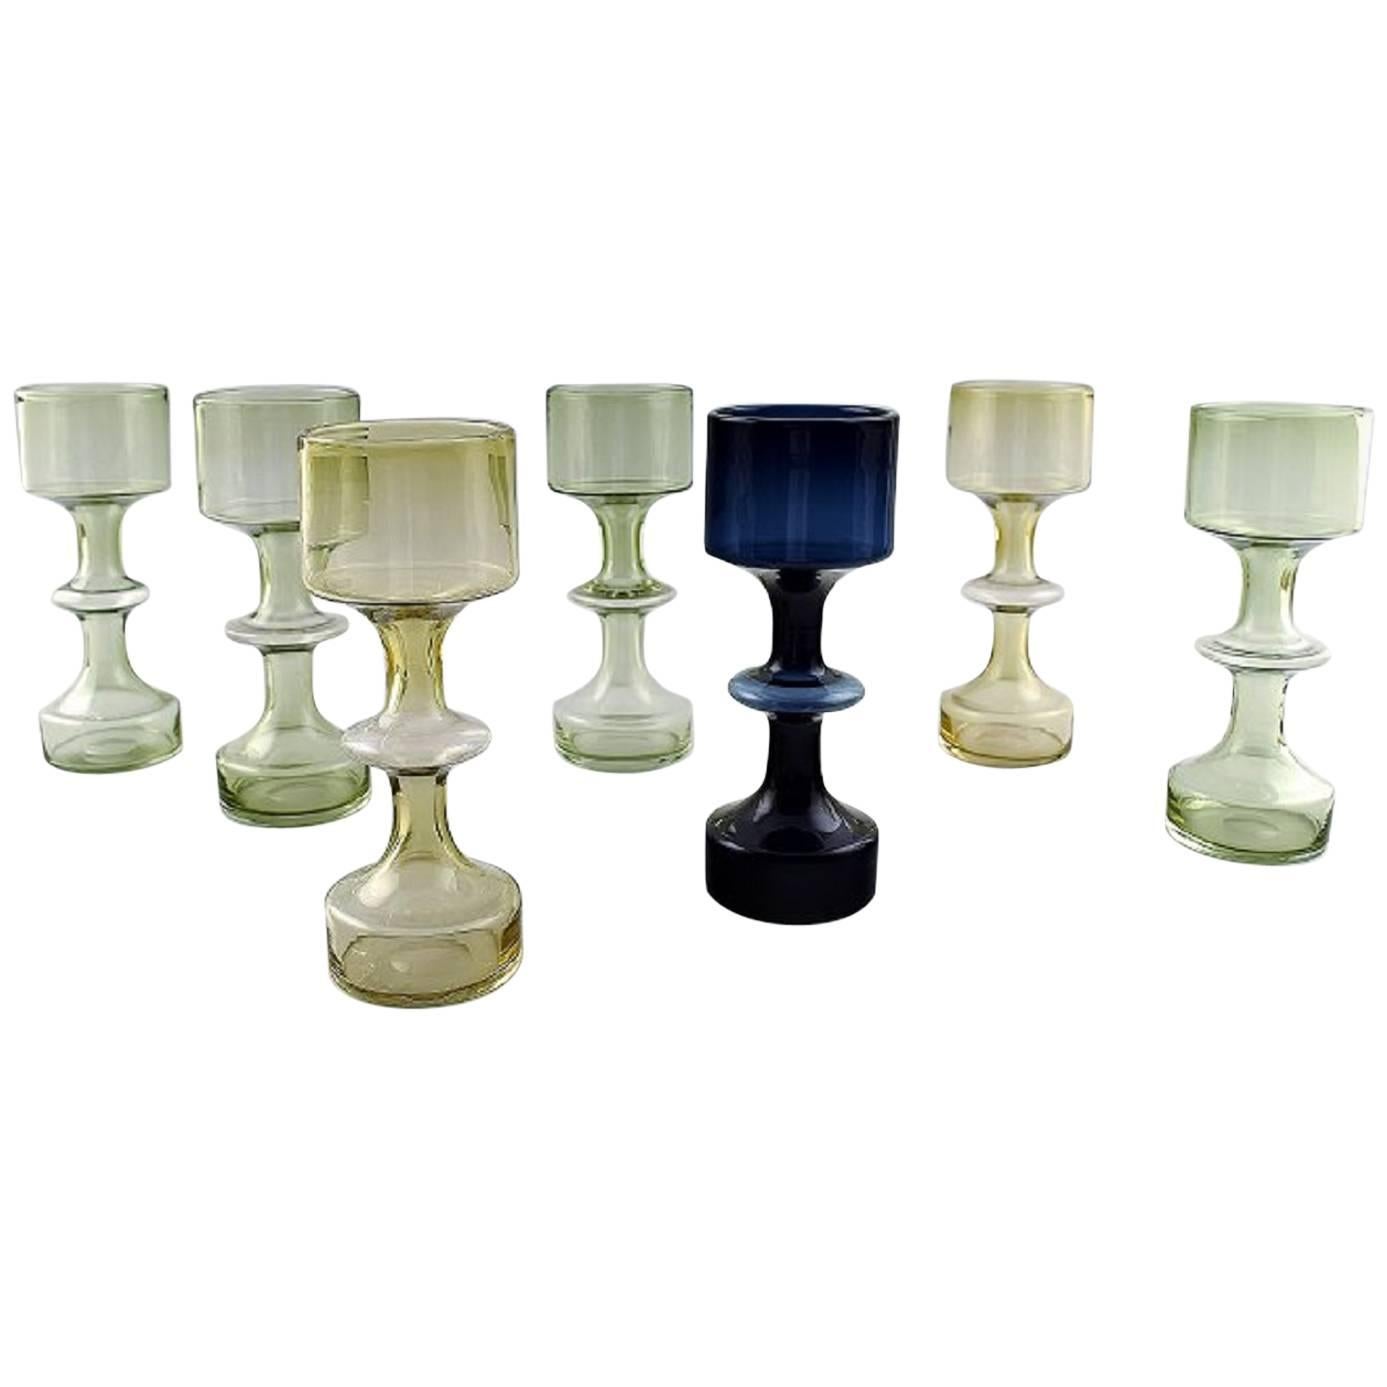 Kaj Franck, Collection of Seven Vases, Art Glass, 1960s, Finnish Design